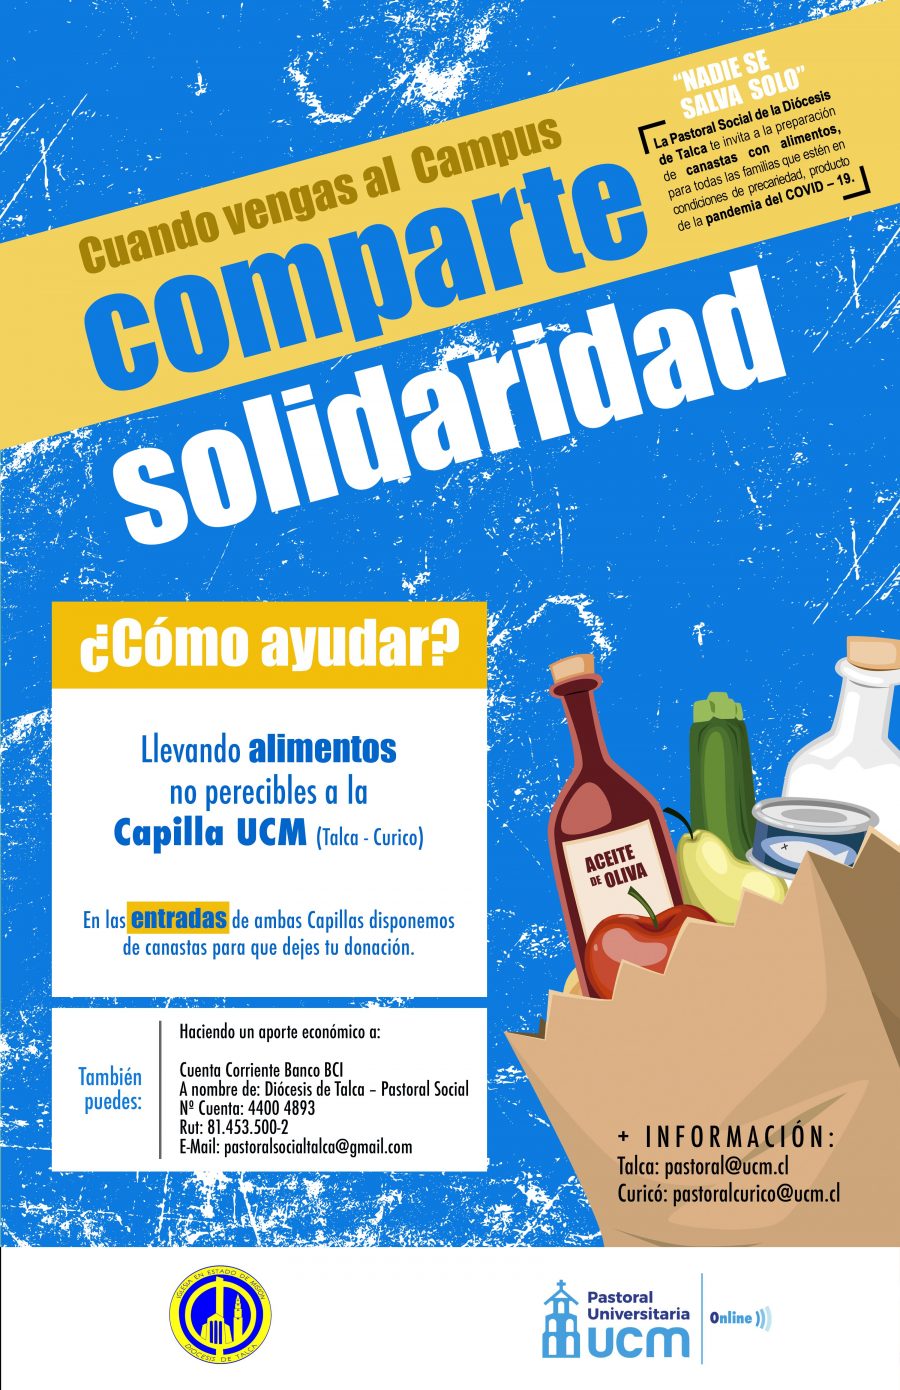 Súmate a la campaña “Contagia Solidaridad”